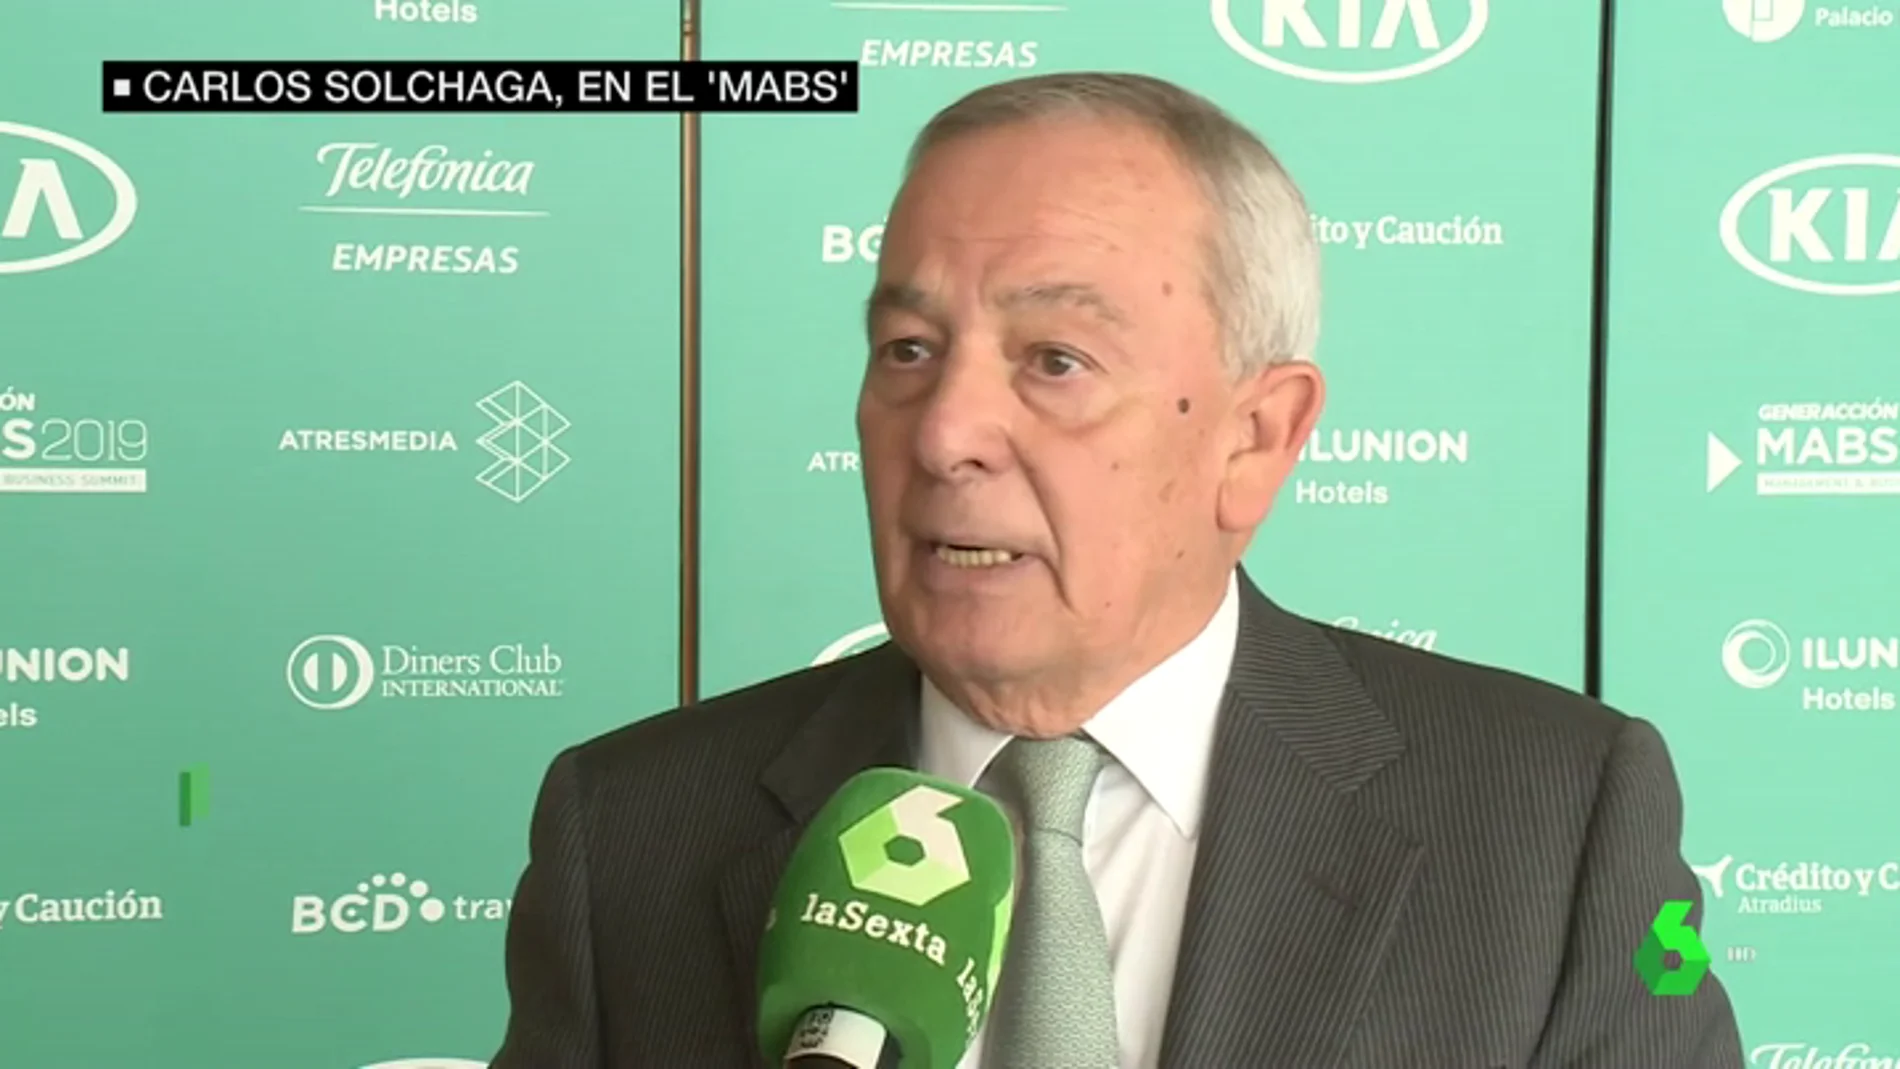 Carlos Solchaga, exministro de economía: "Creo que merece la pena sondear la posibilidad de formar un acuerdo con Ciudadanos"